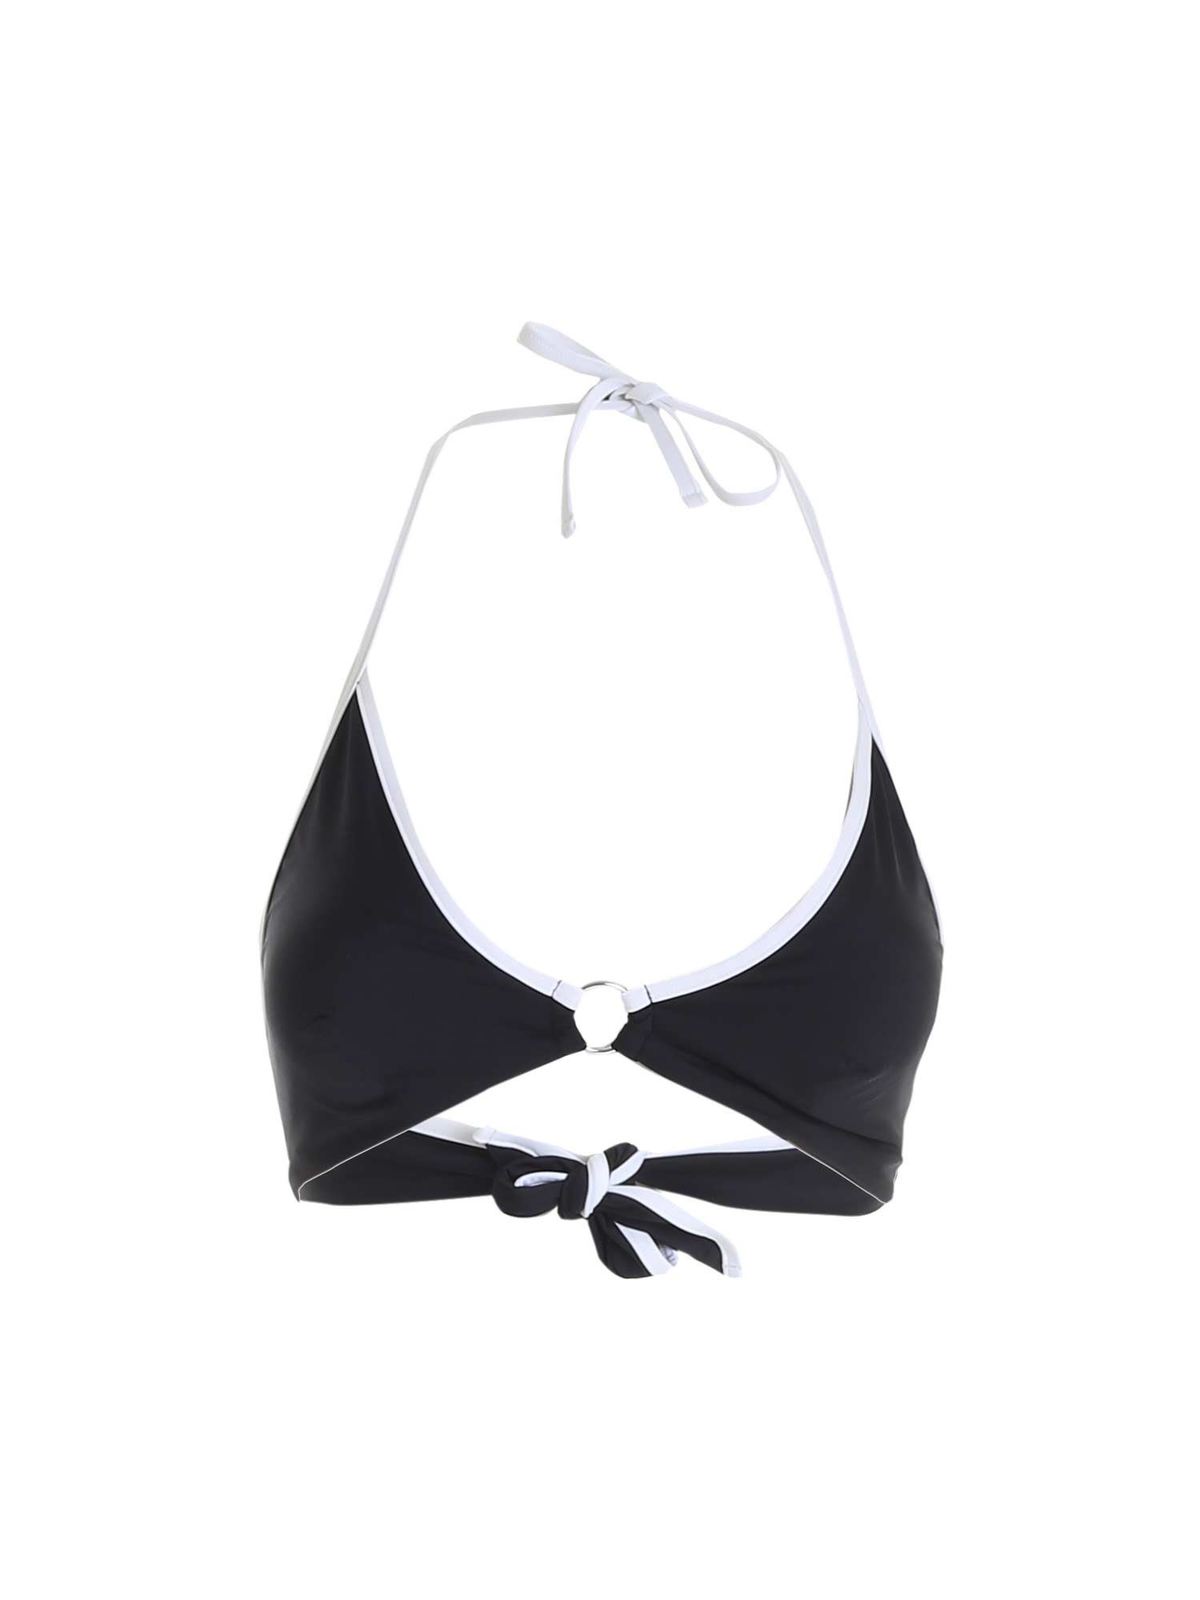 Bikinis Max Mara - 1Liuto bikini top in black - 38312618650001 | iKRIX.com